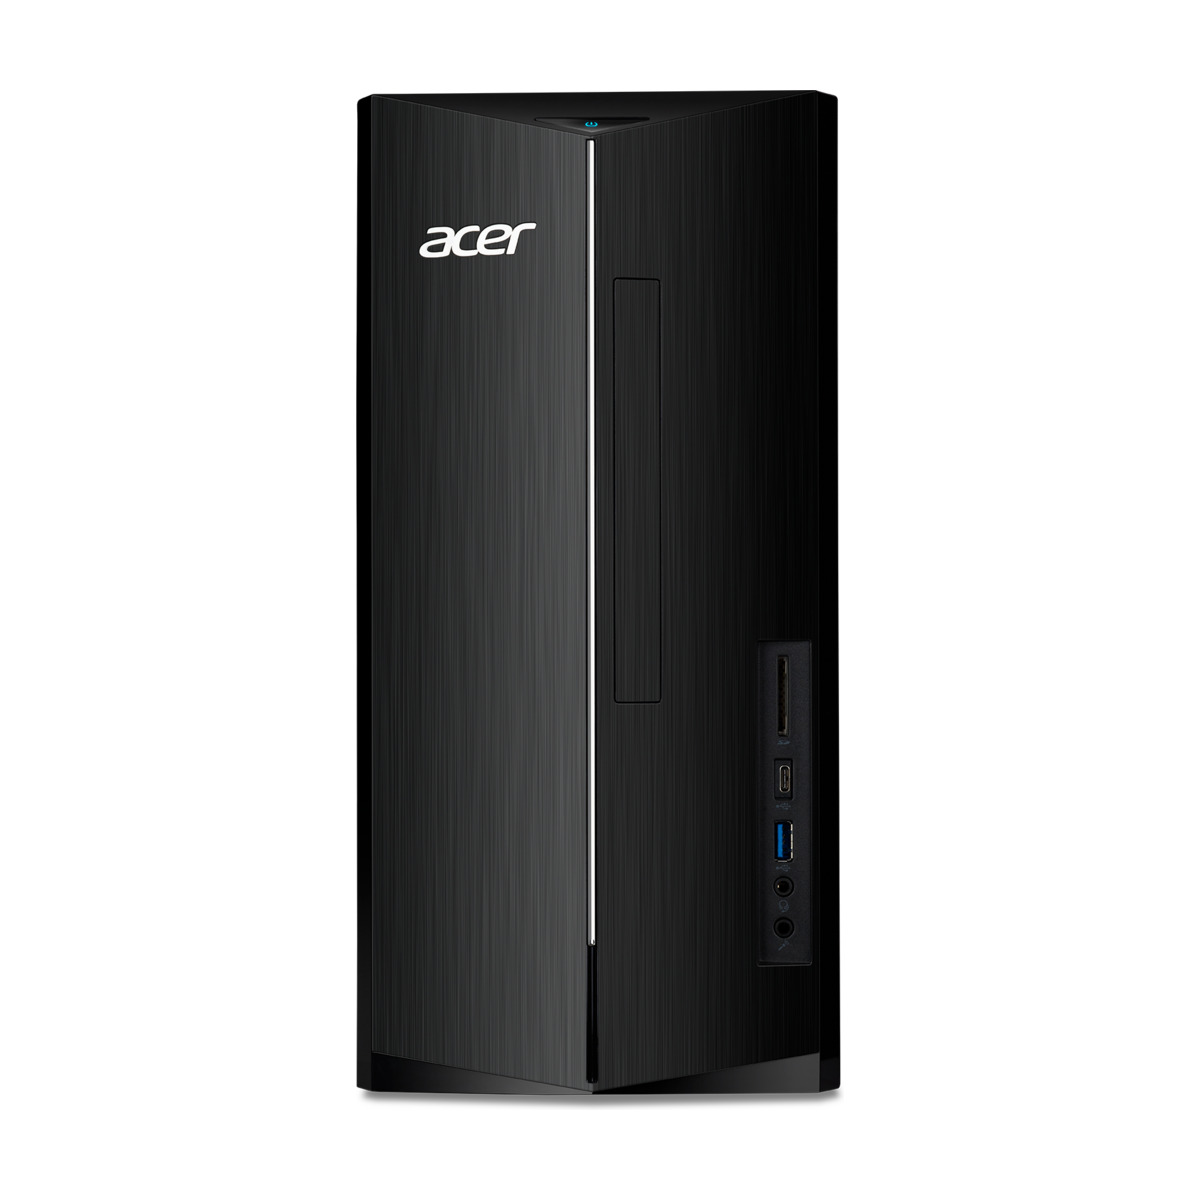 Acer Aspire Tc-1780 stationær PC